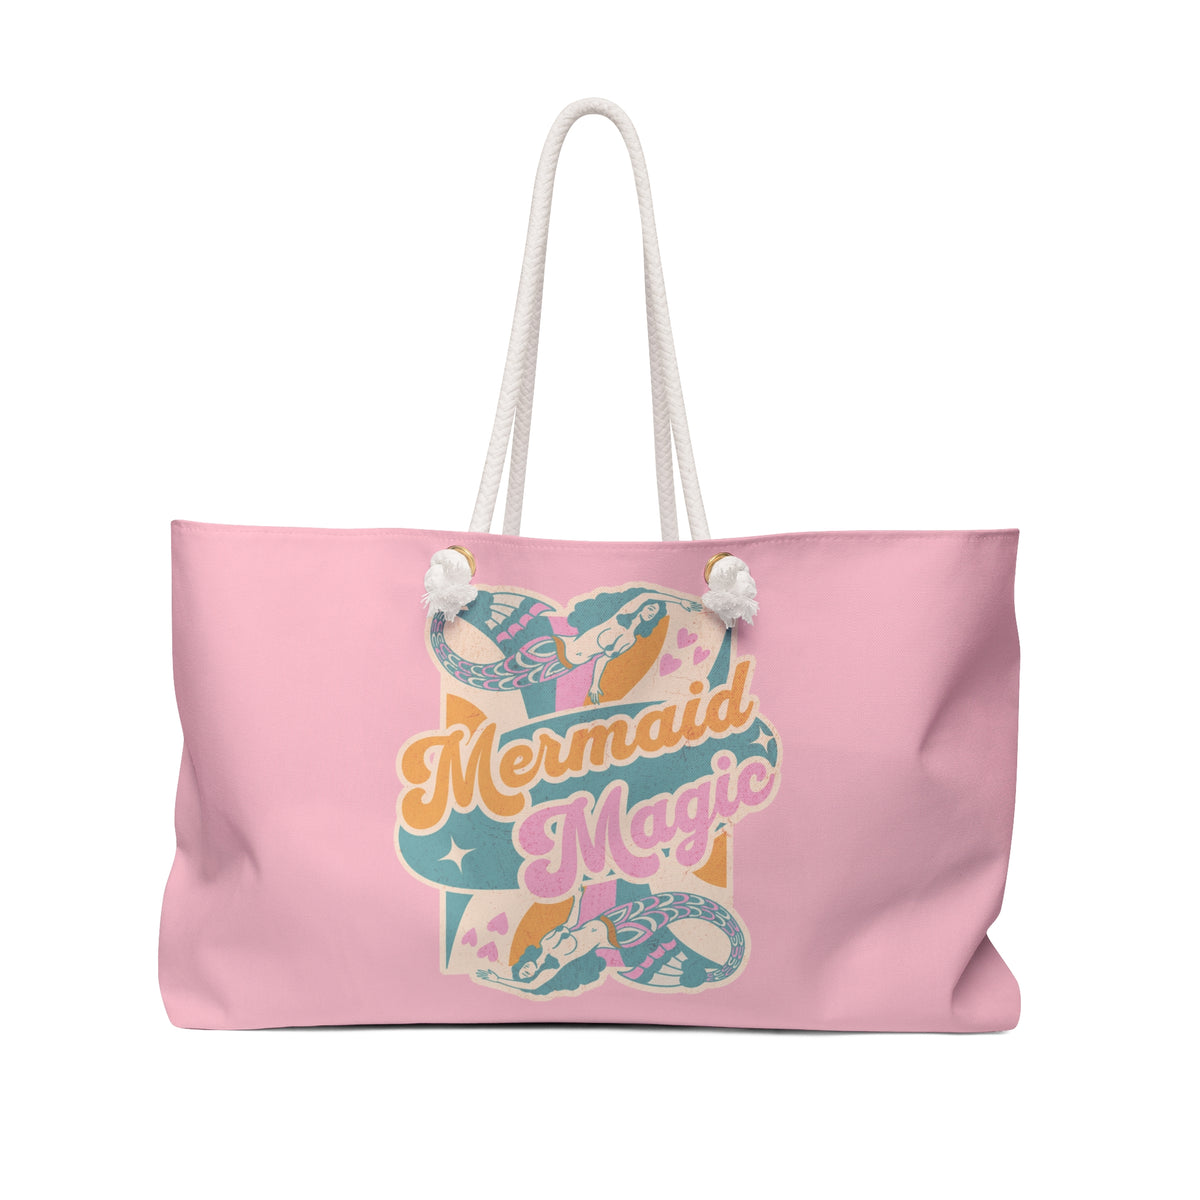 Mermaid Magic Tote Bag